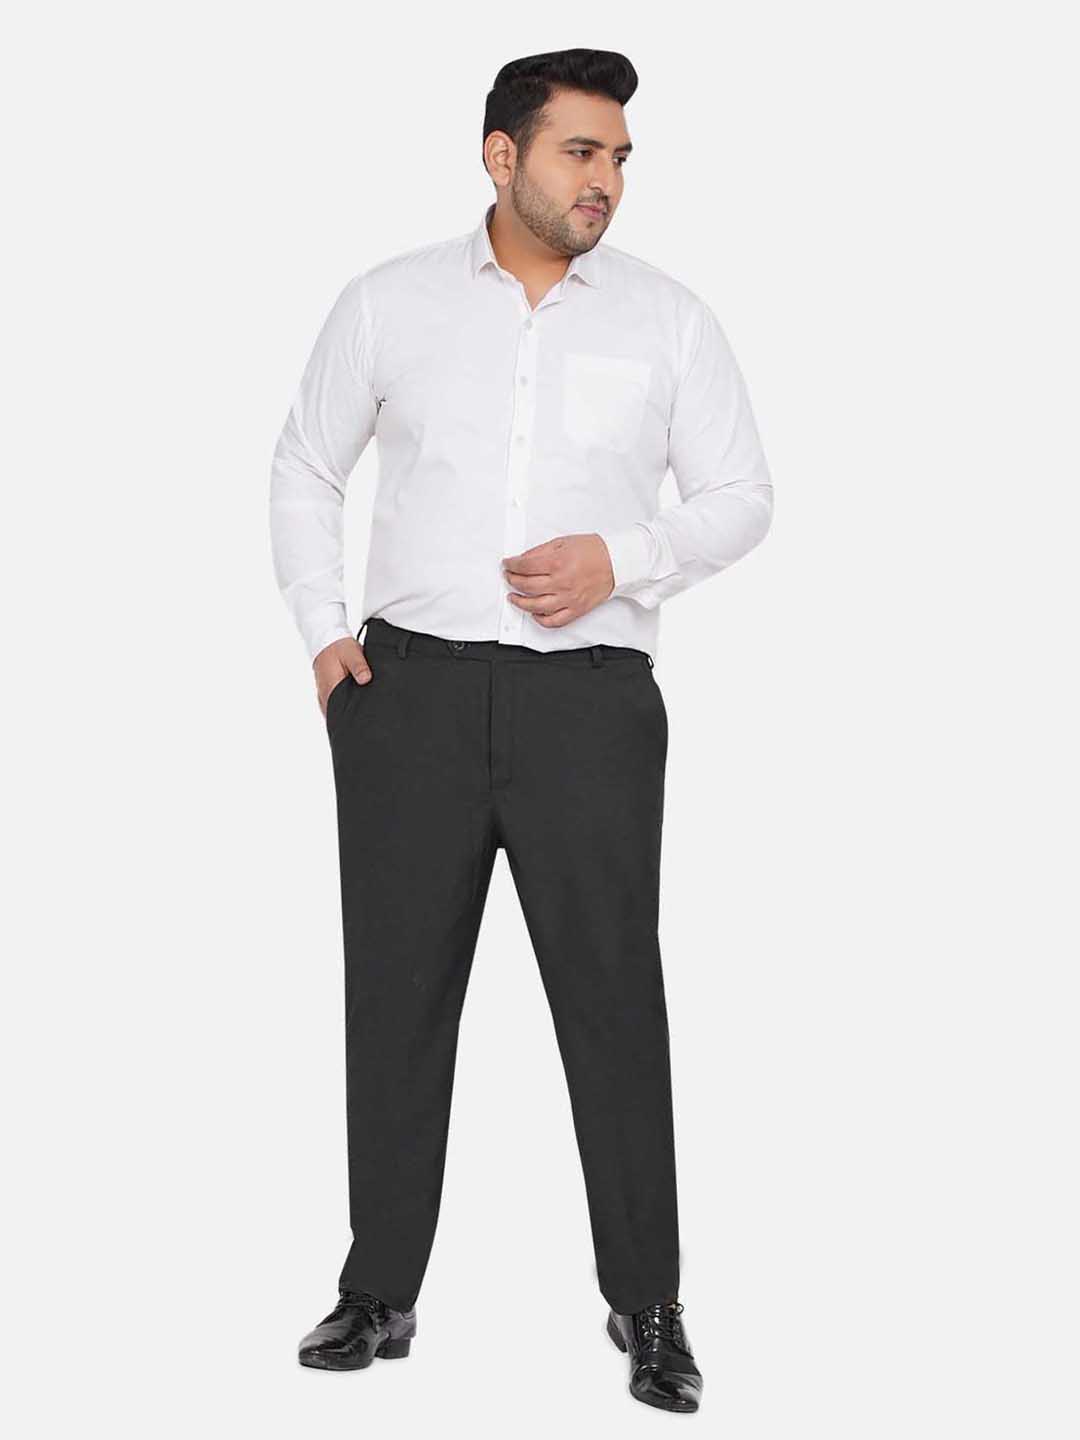 bottomwear/trousers/JPTR22010G/jptr22010g-6.jpg